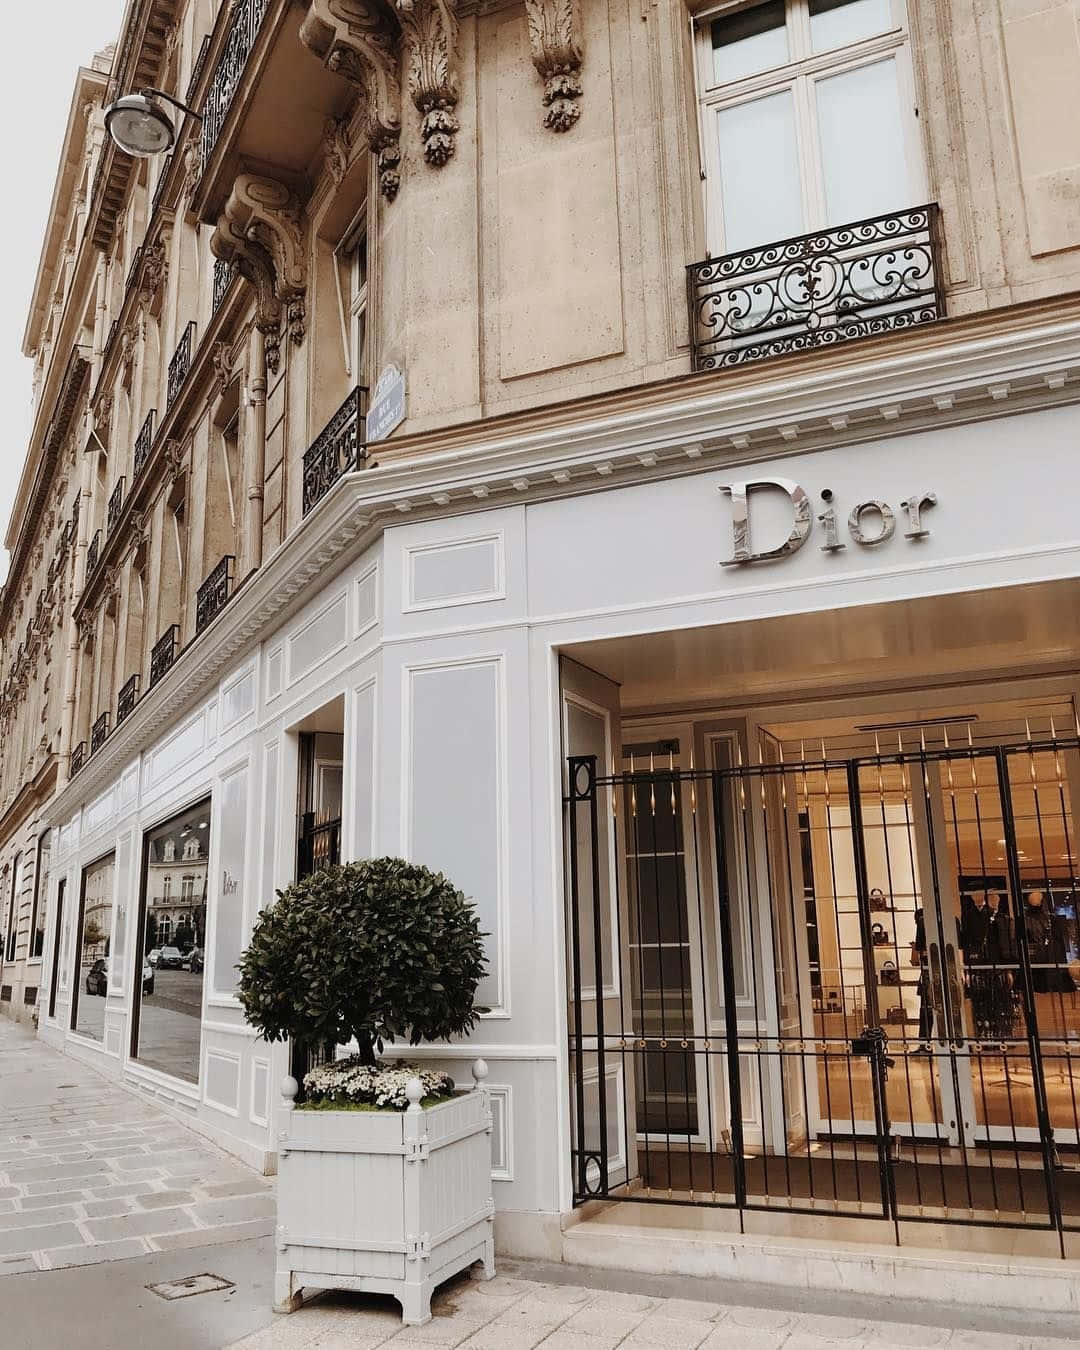 Elegant Dior Boutique Exterior Wallpaper